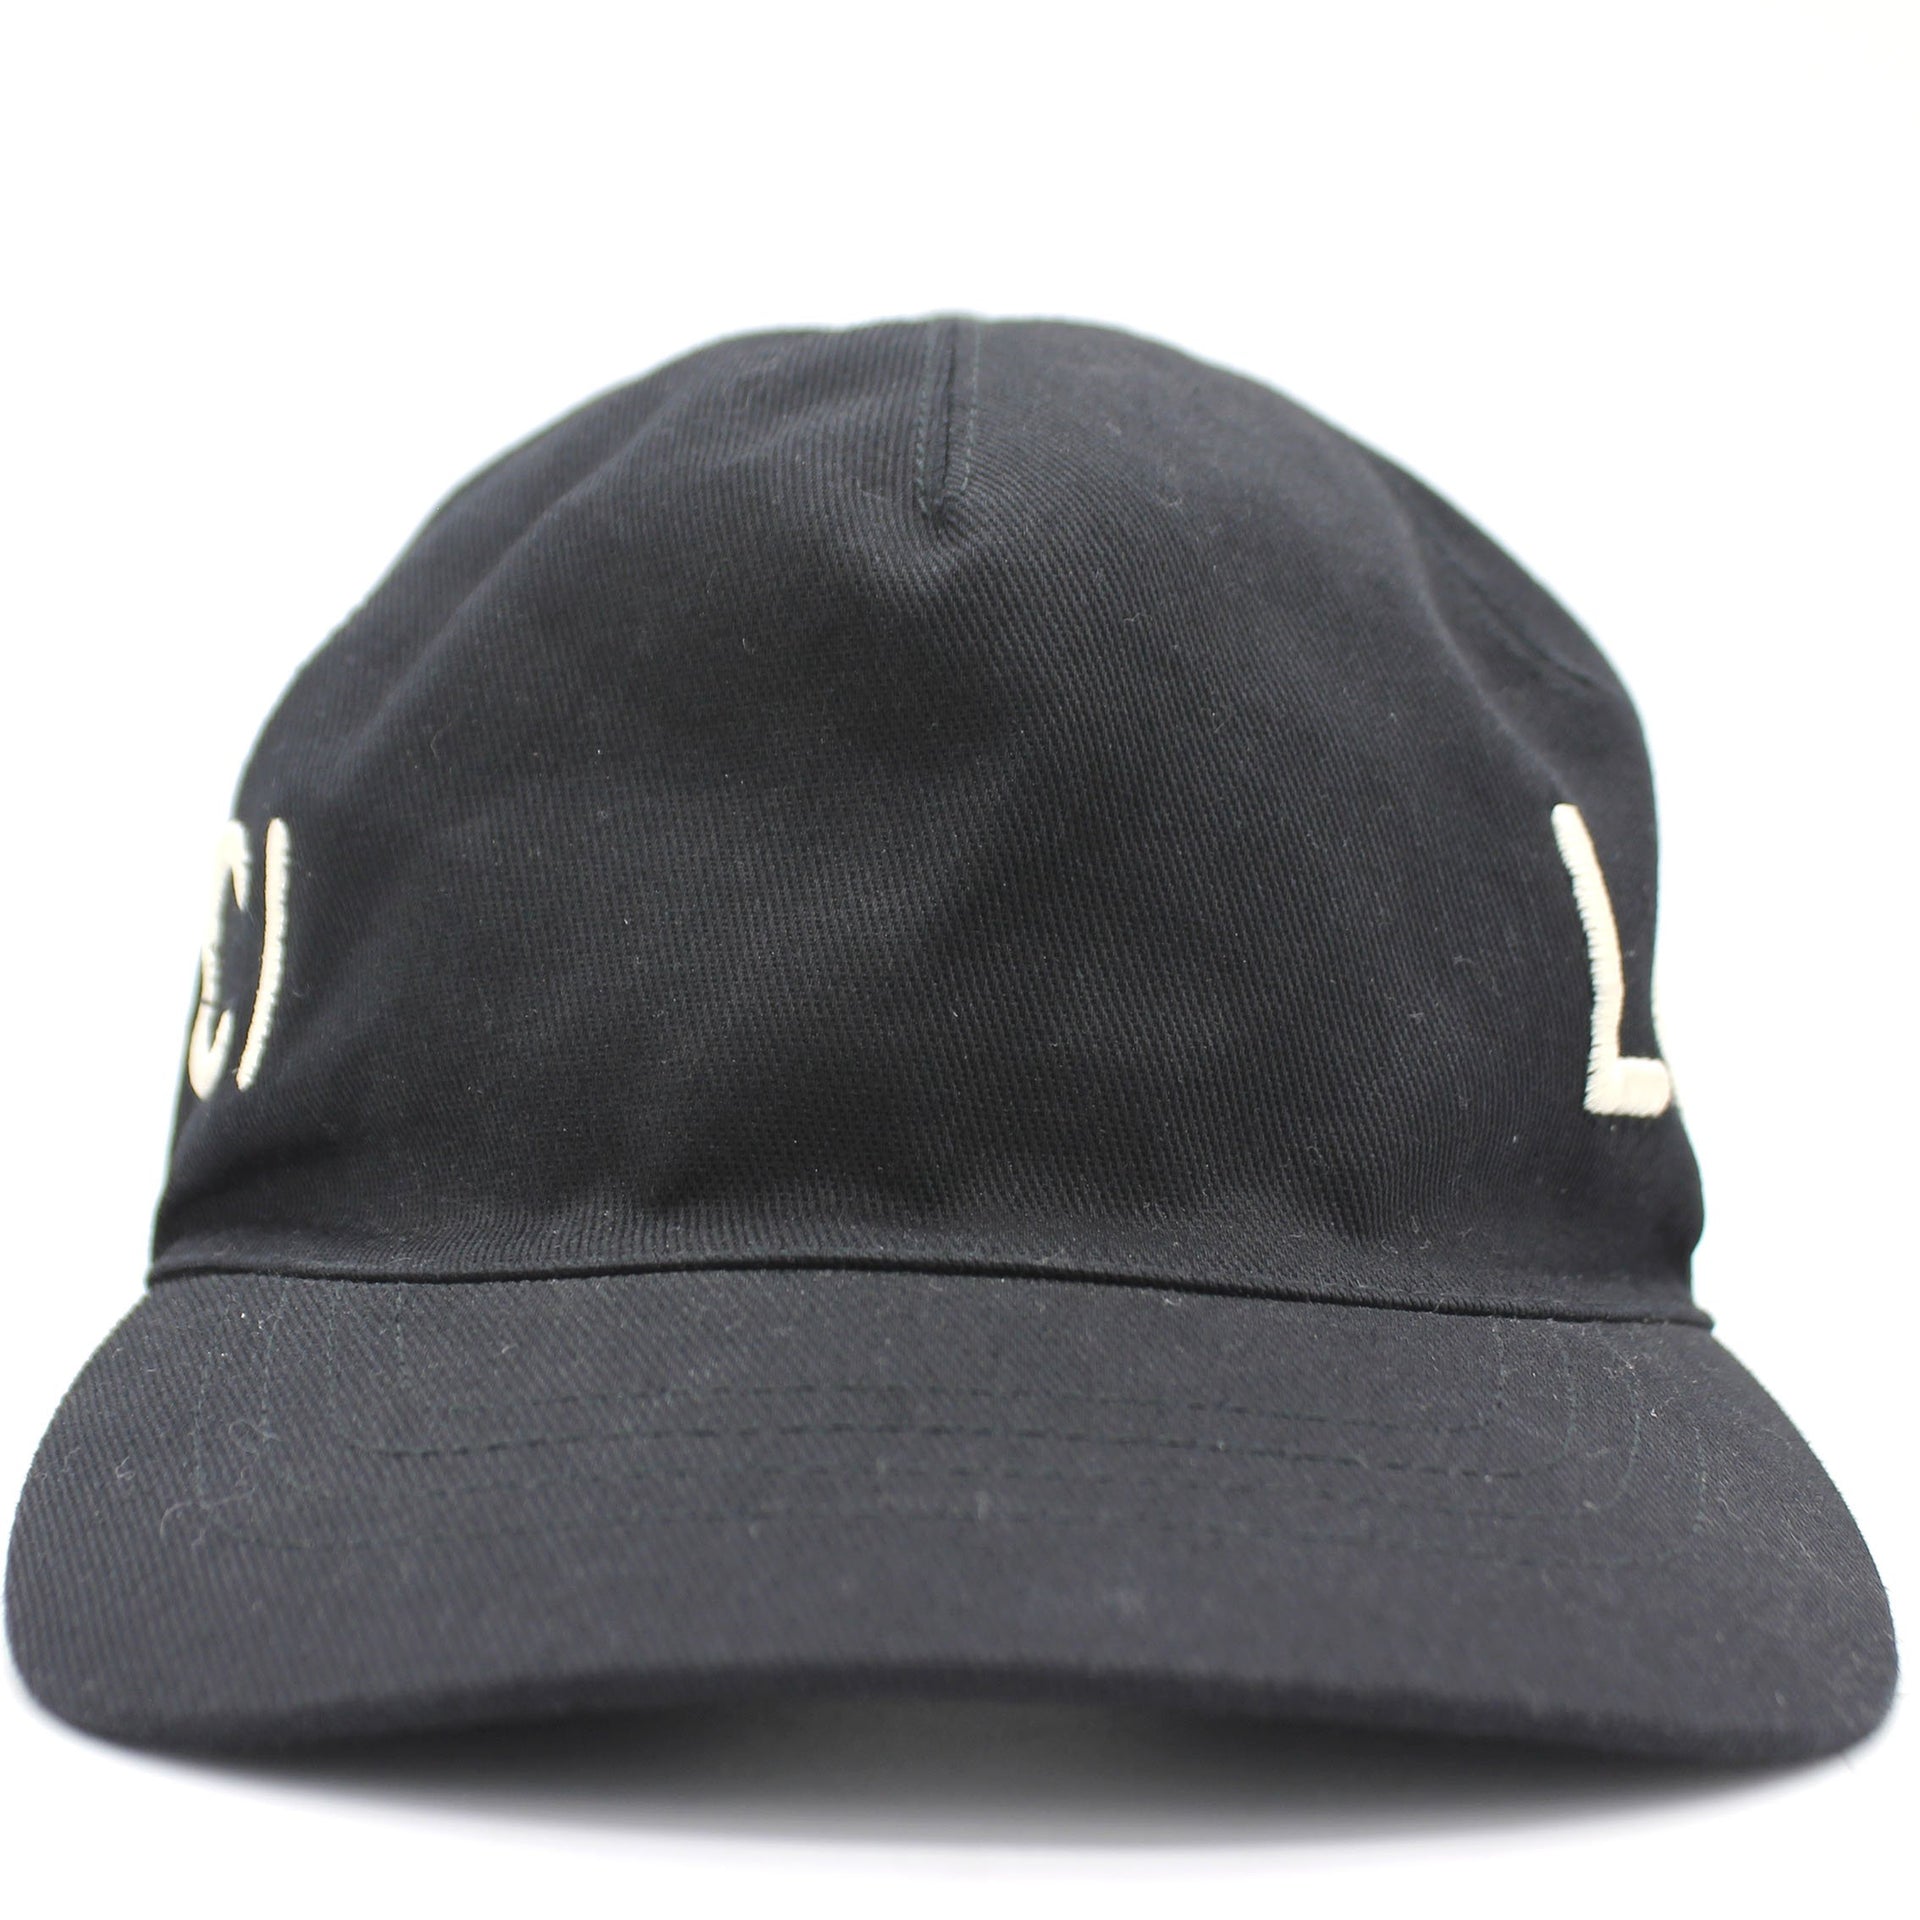 Cotton Web Baseball Hat Black size L